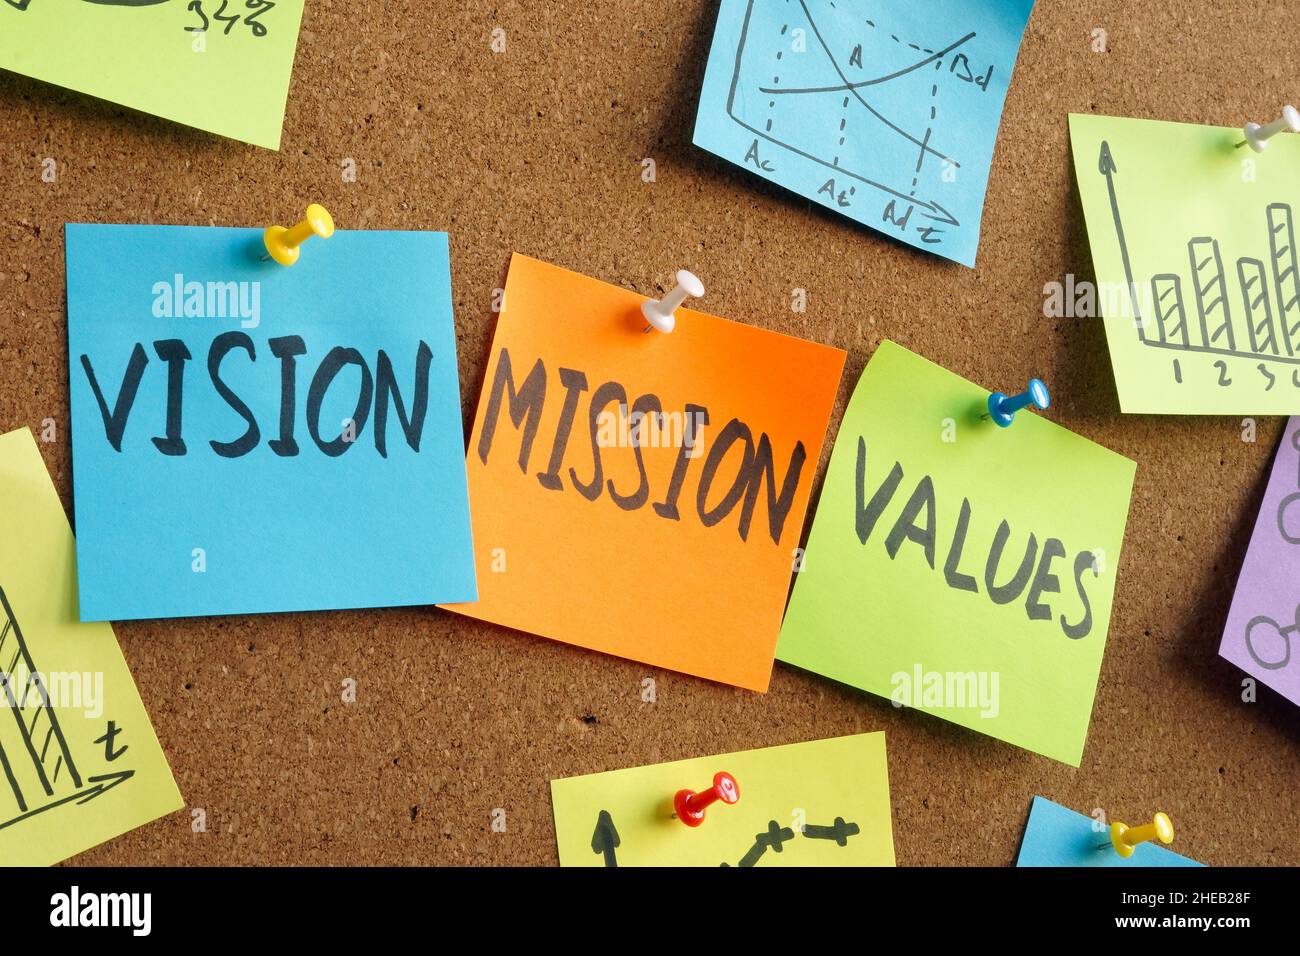 Vision, Mission und Werte Worte auf den bunten Aufklebern. Stockfoto